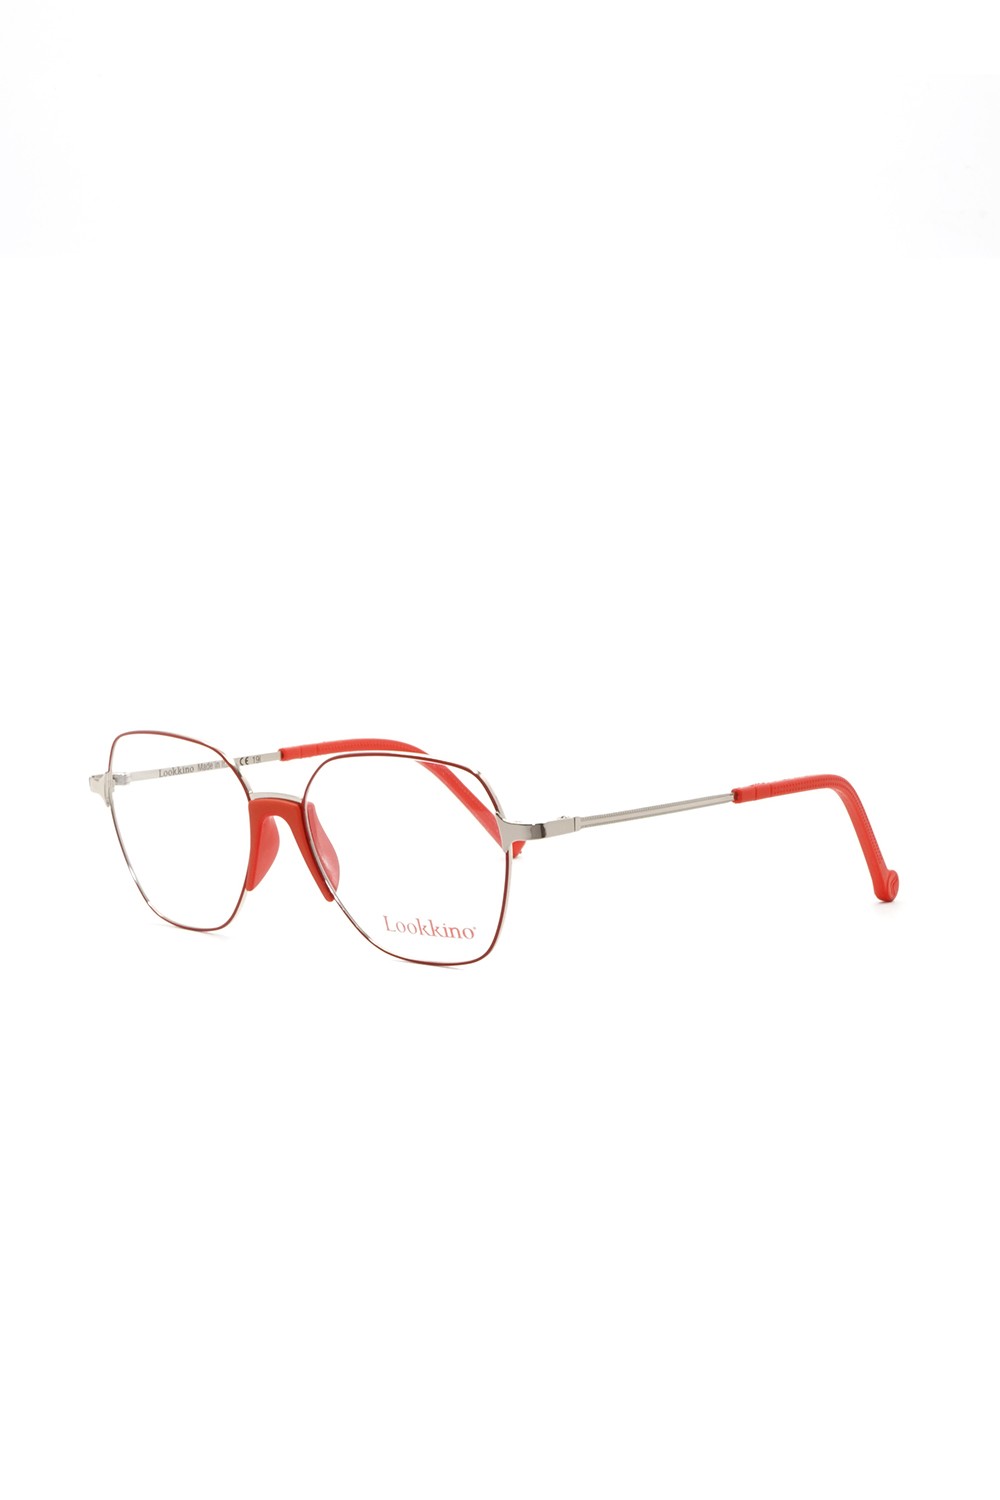 Lookkino - Occhiali da vista in metallo squadrati per bambini rosso - 3461 M1